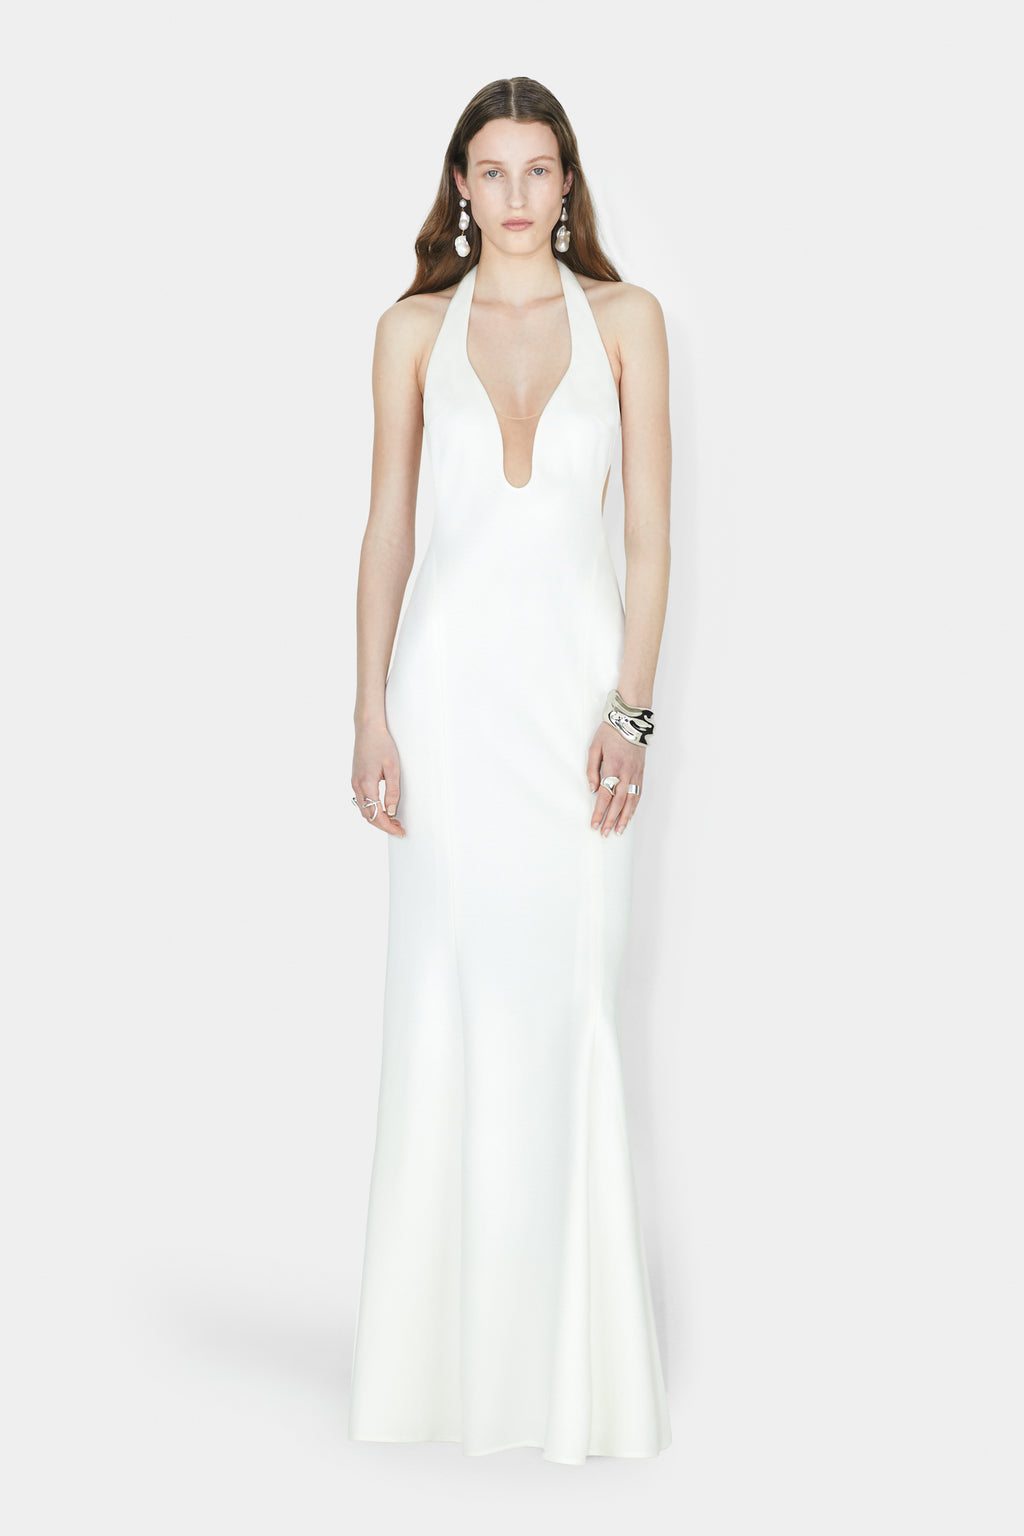 Hebrides Bridal Gown – Off White Robes de mariée The Wedding Explorer